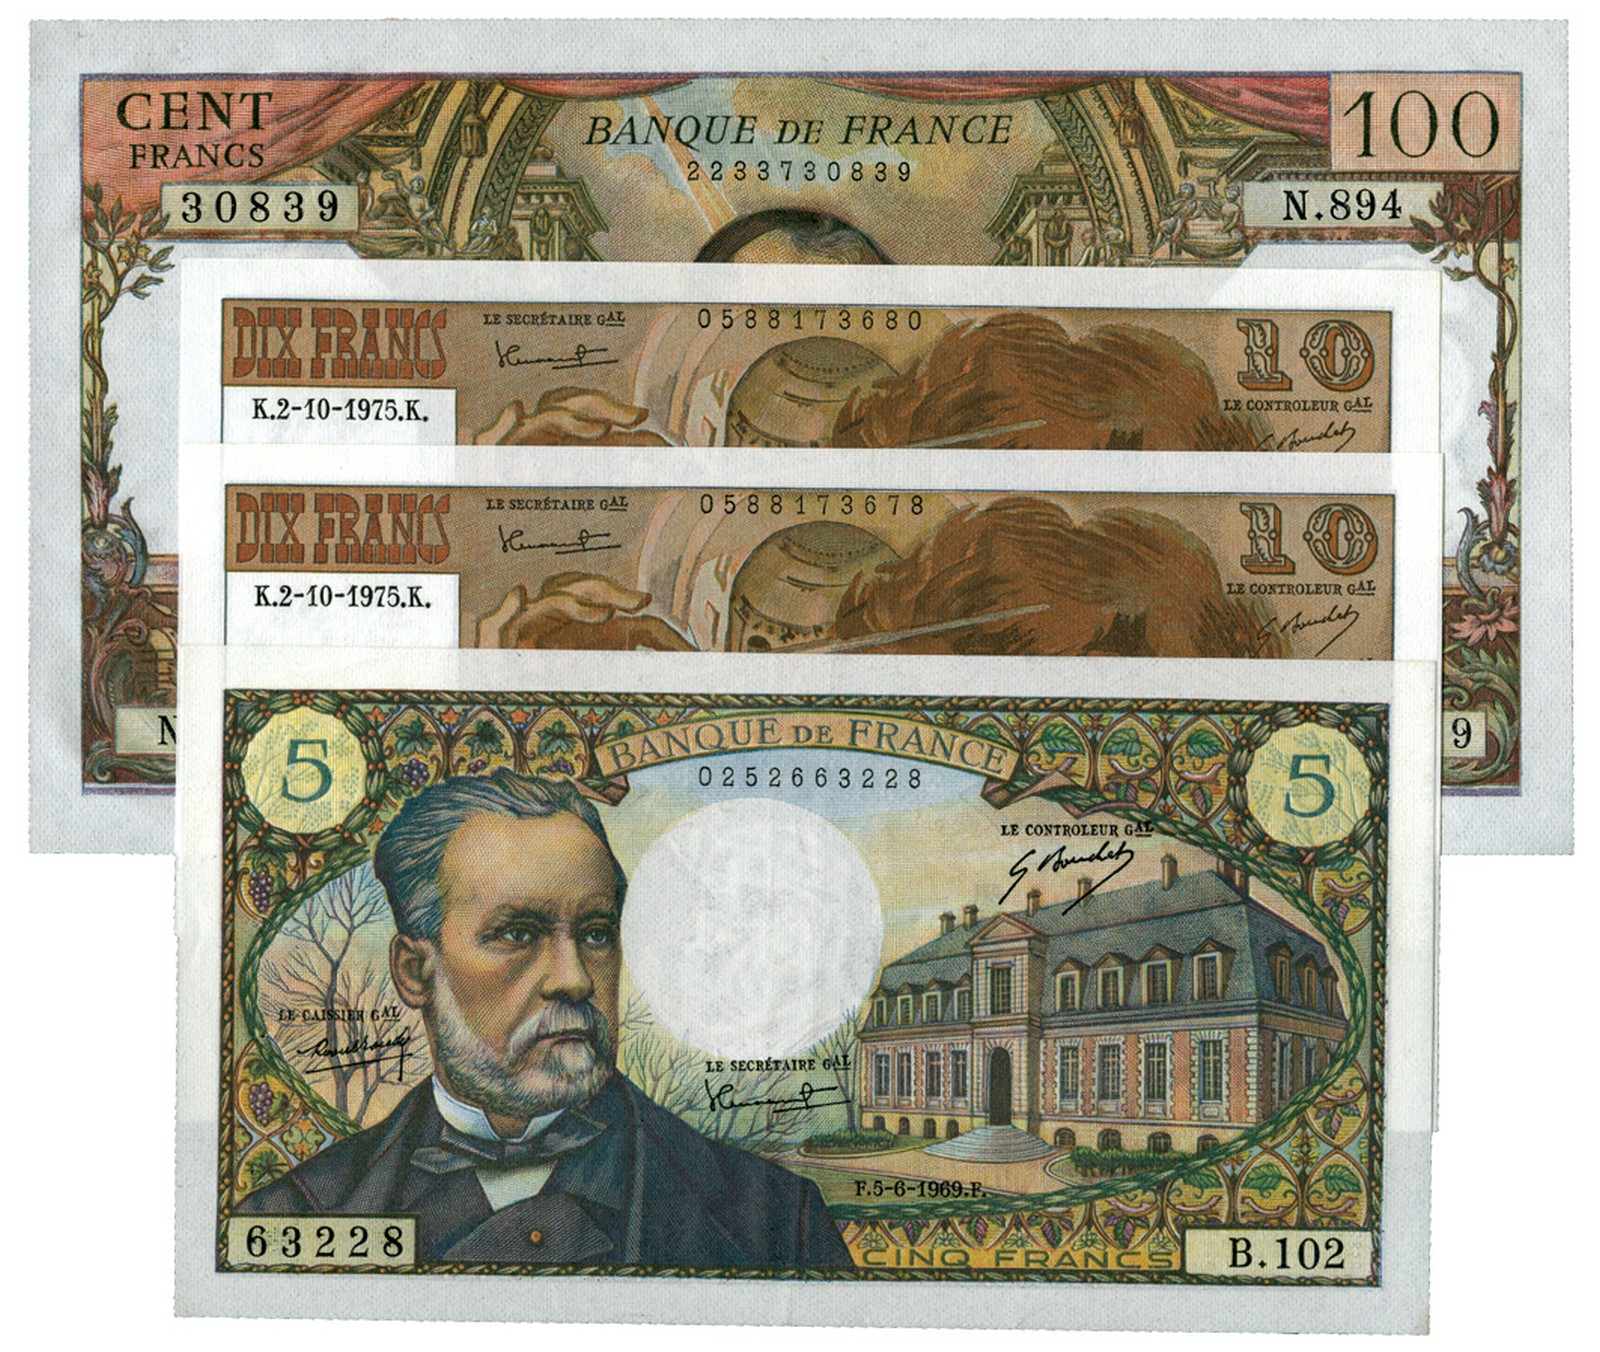 BANKNOTES, 紙鈔, FRANCE, 法國, Banque de France: 5-Francs, 5 June 1975, serial no.B.102 63228, Obv Louis